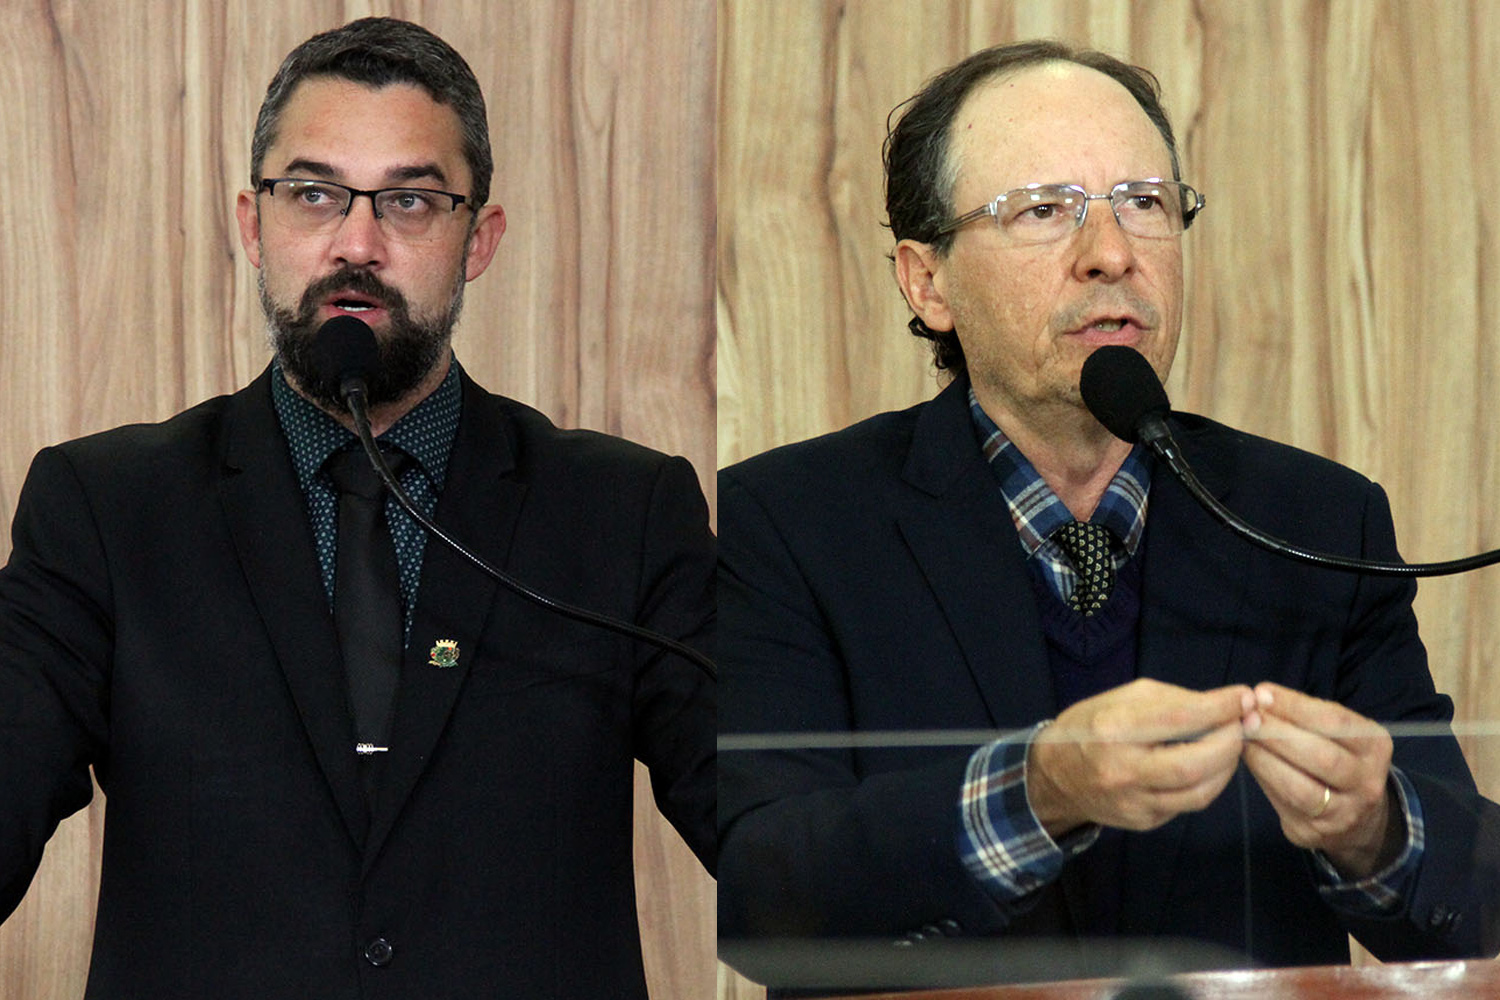 #PraCegoVer: foto-montagem mostra os vereadores Alécio Cau e Henrique Conti lado a lado. Ambos usam a tribuna da Câmara.